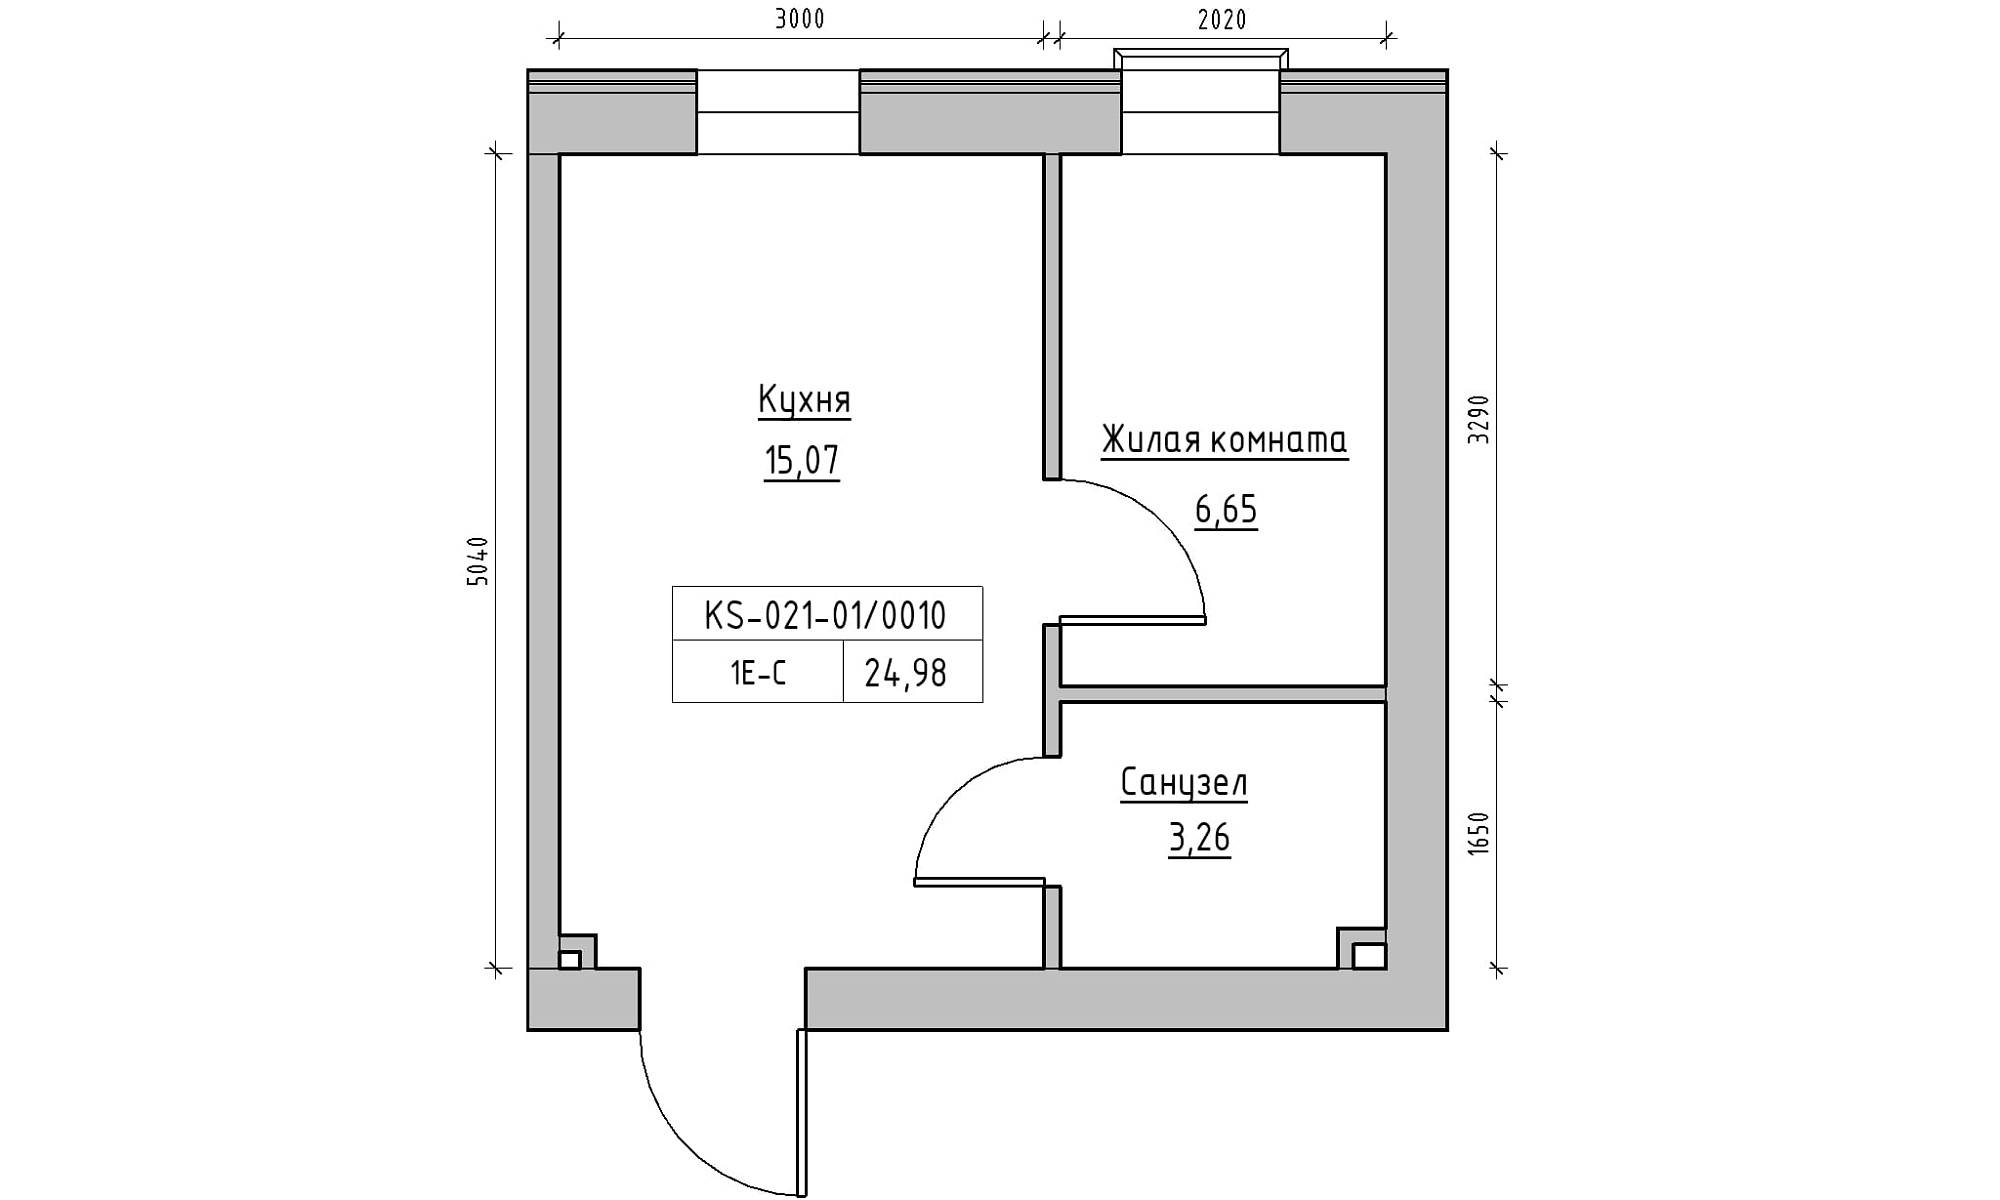 Планировка 1-к квартира площей 24.98м2, KS-021-01/0010.